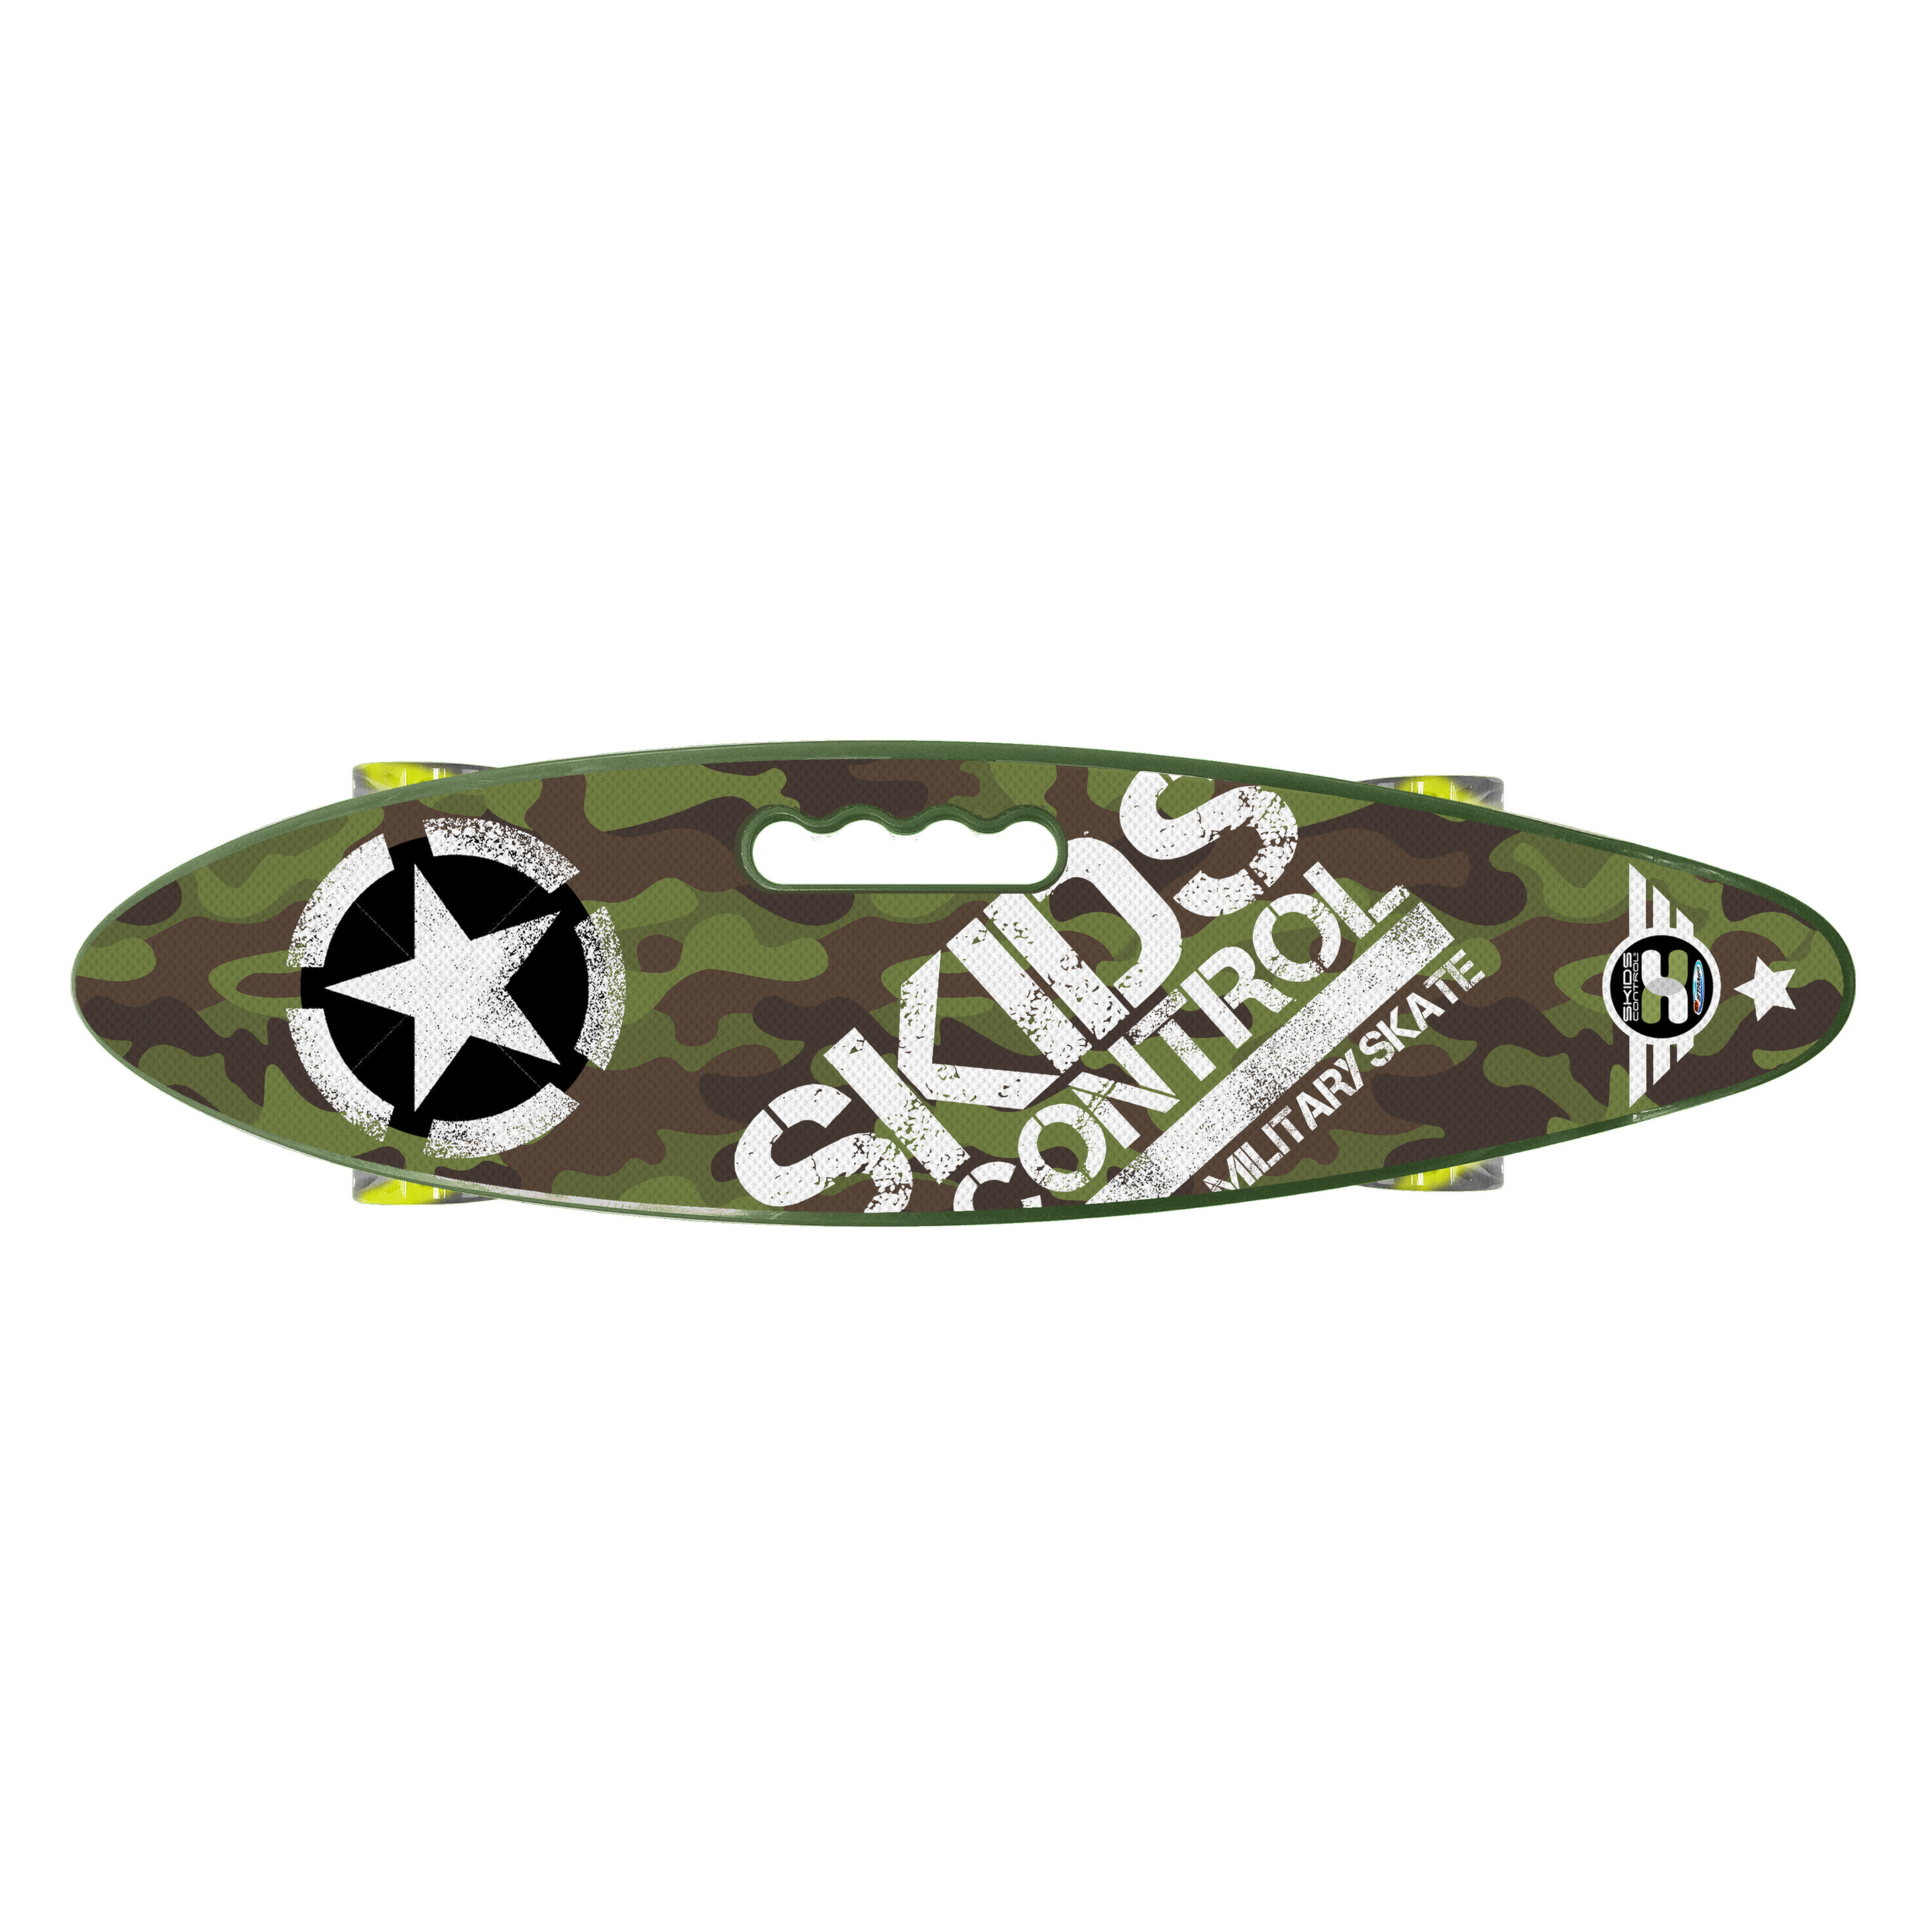 Skateboard Skids Control 24x7 Pulgadas - Verde  MKP